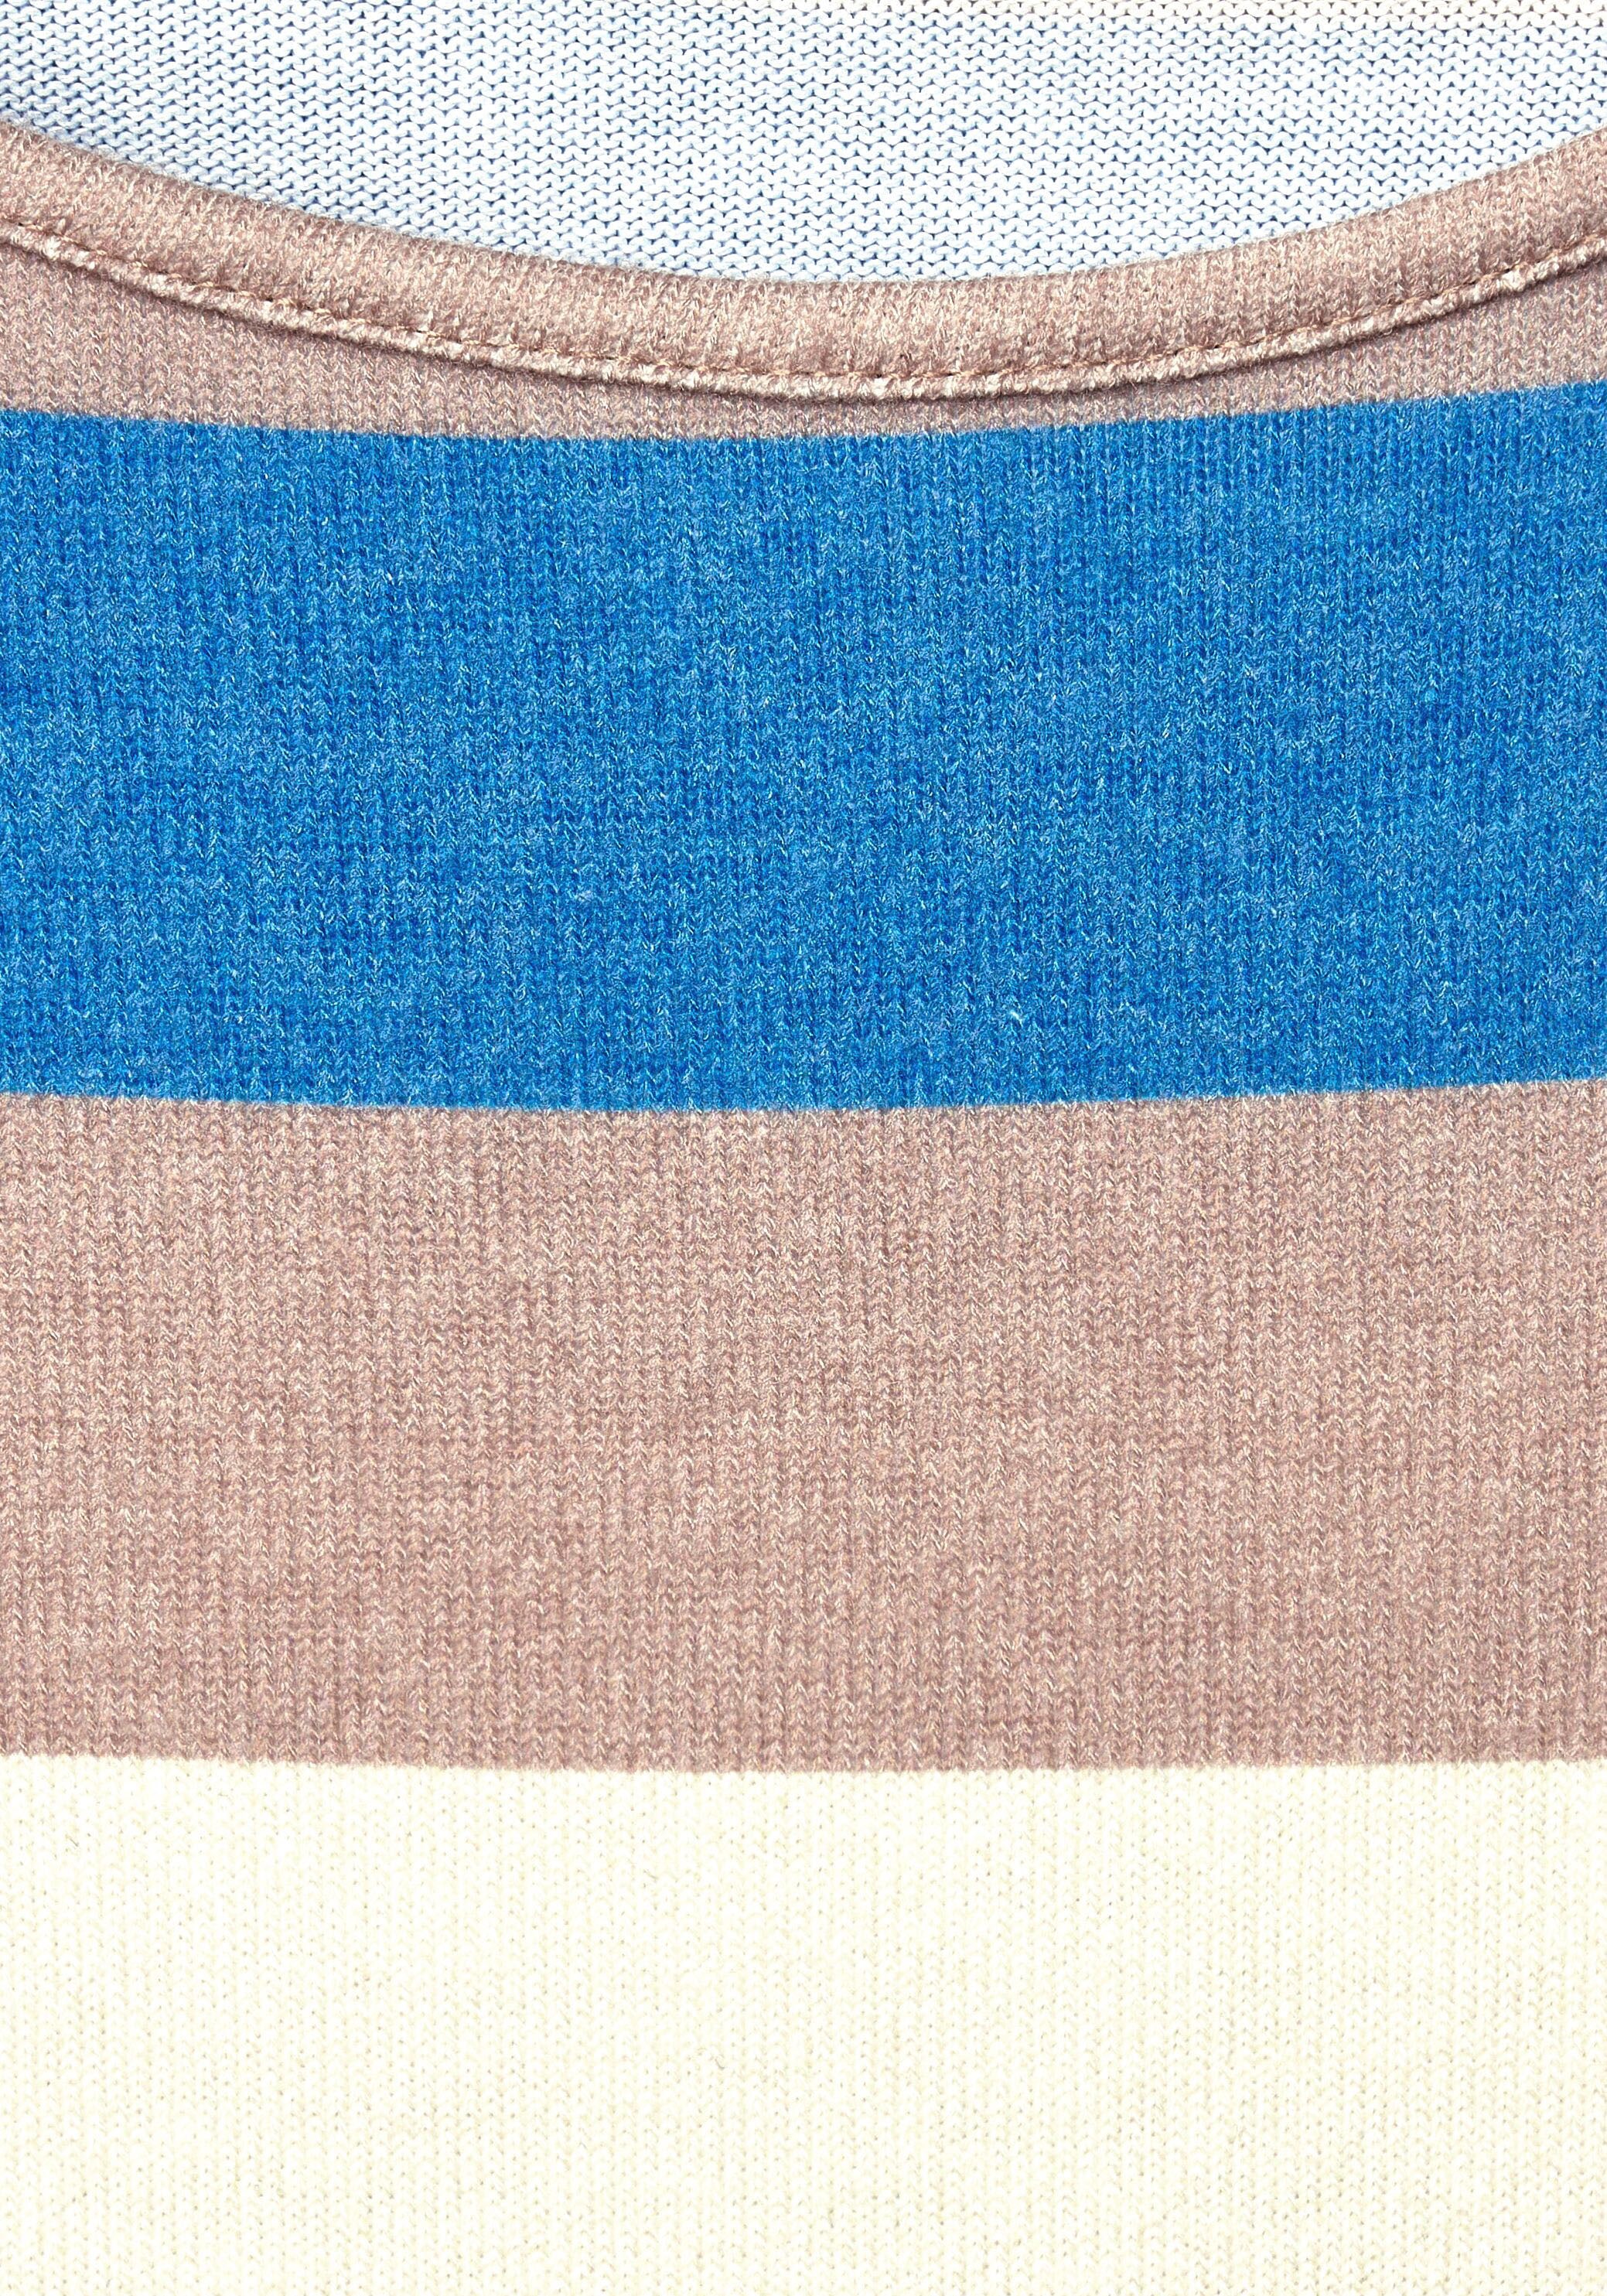 mehrfarbigem 3/4-Arm-Shirt, | STREET in BAUR ONE für Blockstreifen-Design kaufen